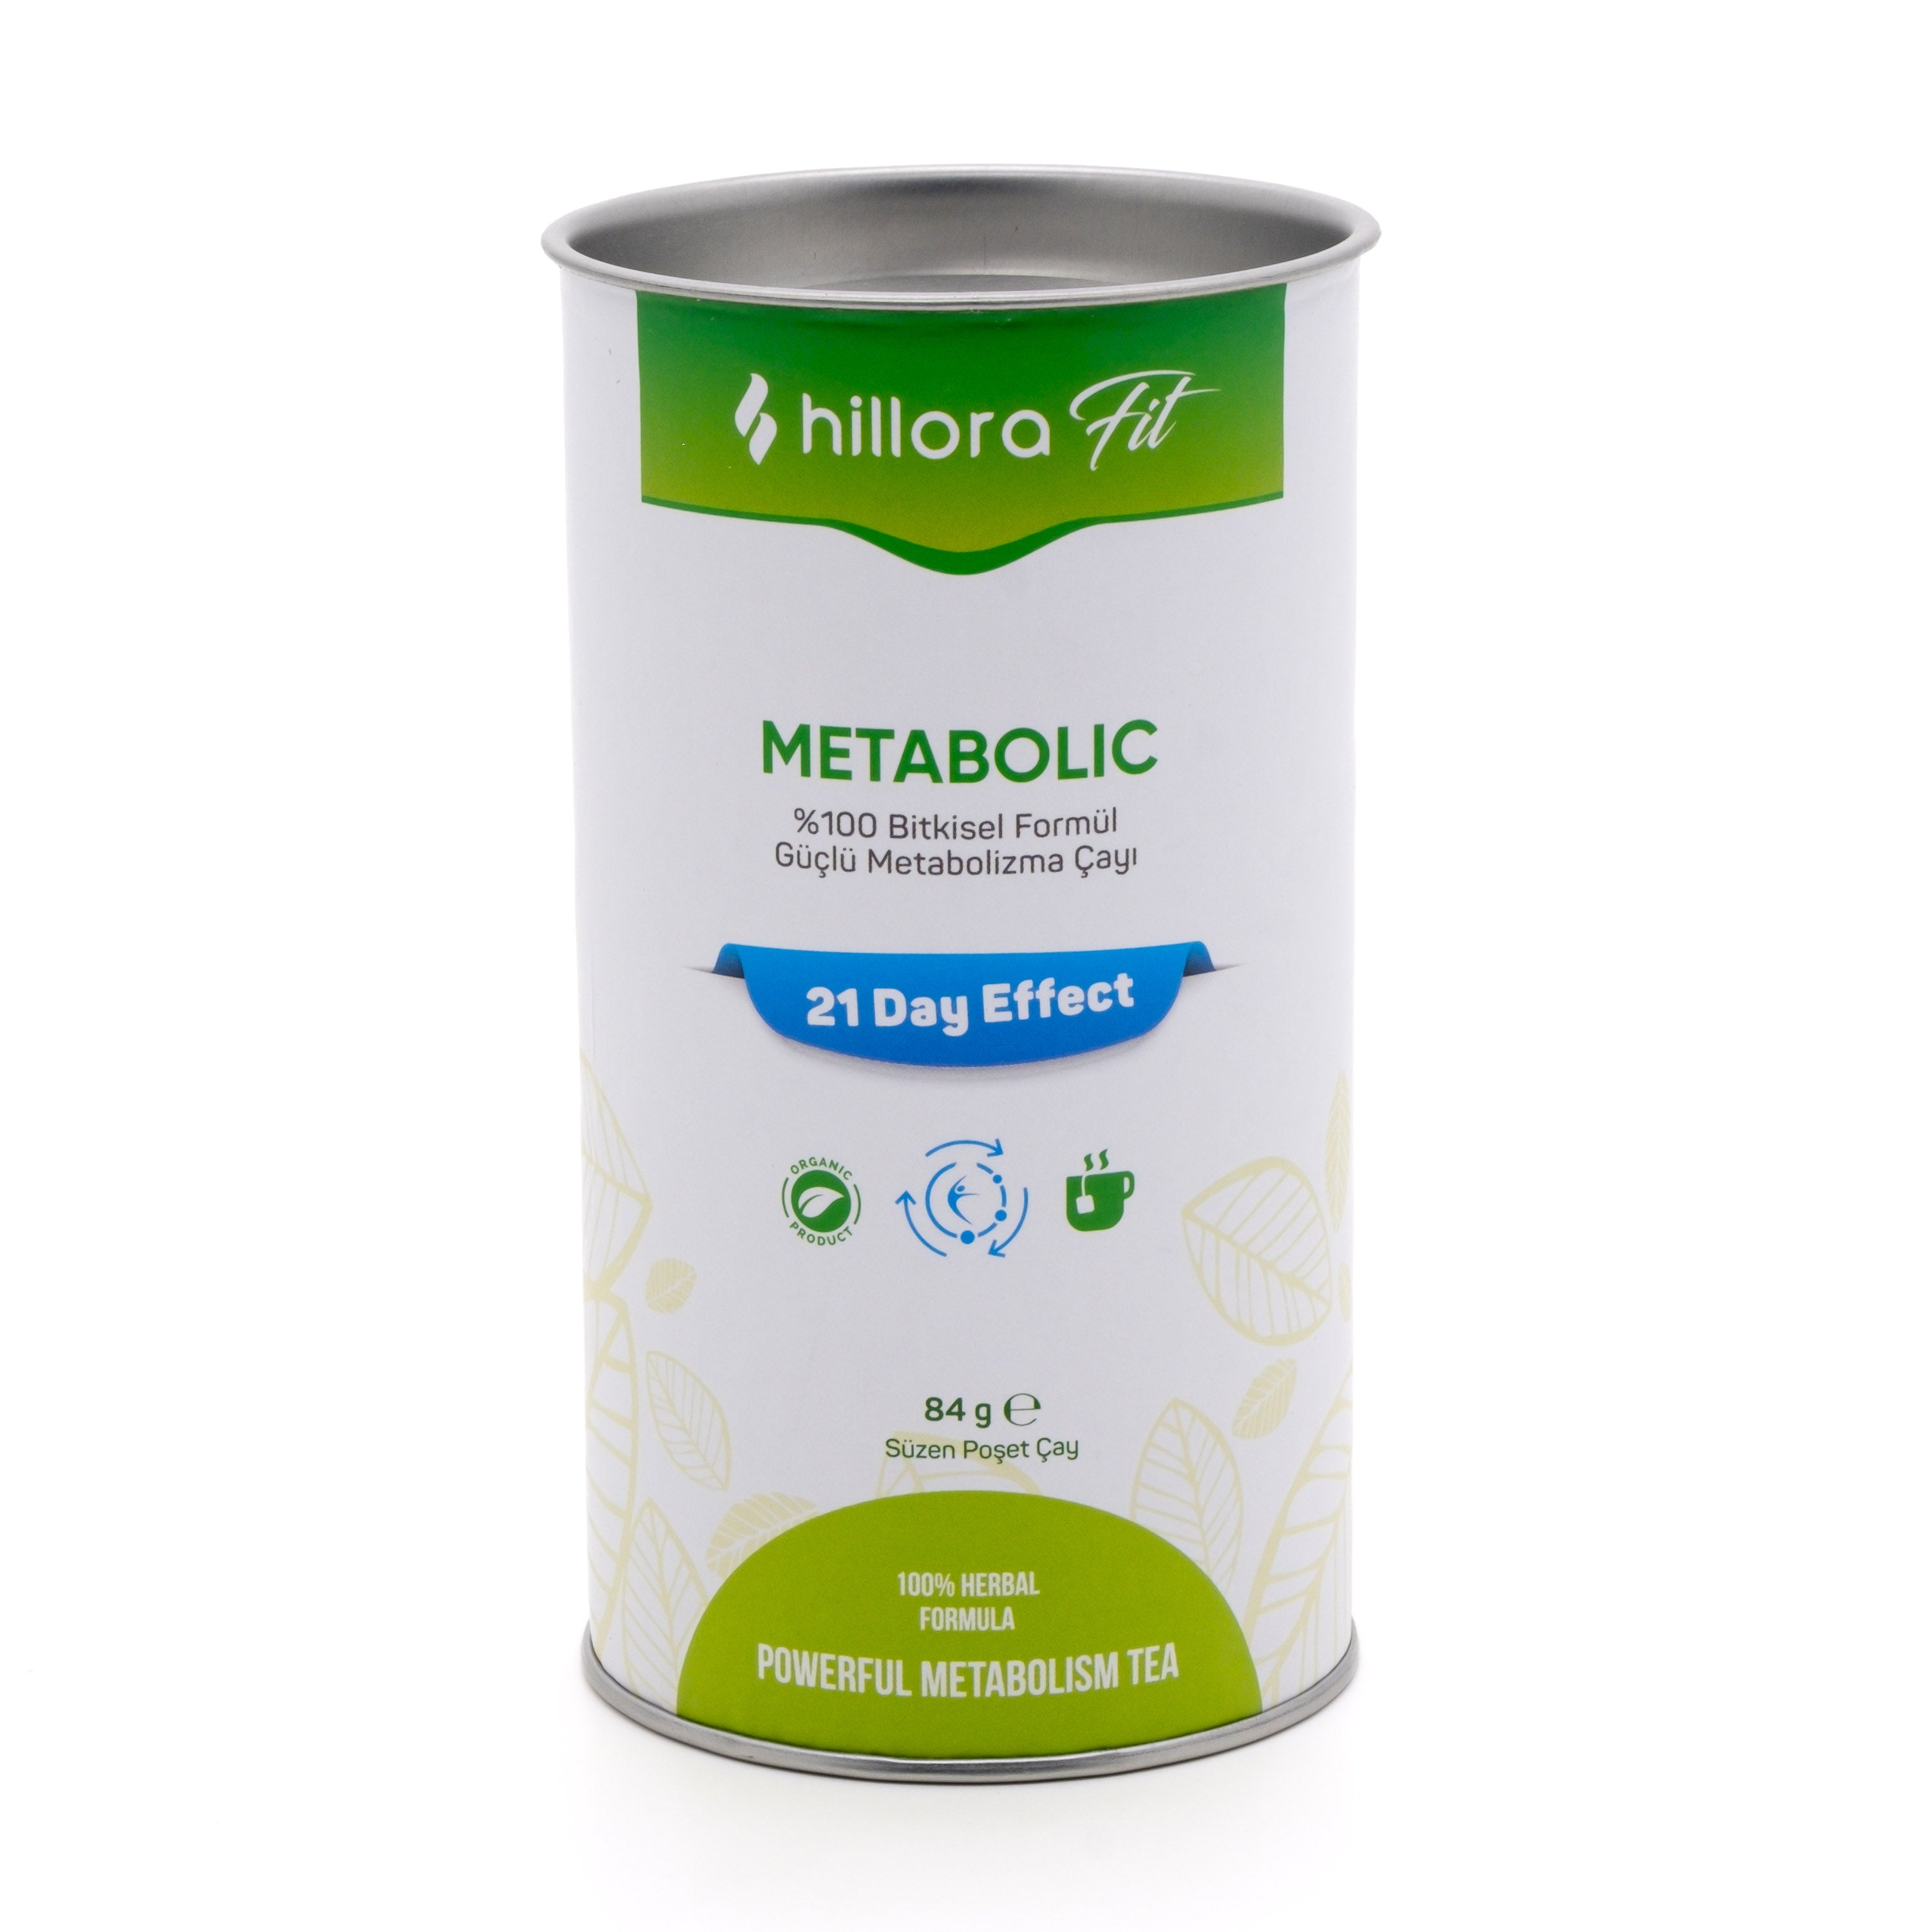 Hillora Fit Metabolic - %100 Bitkisel Formül Güçlü Metabolizma Çayı